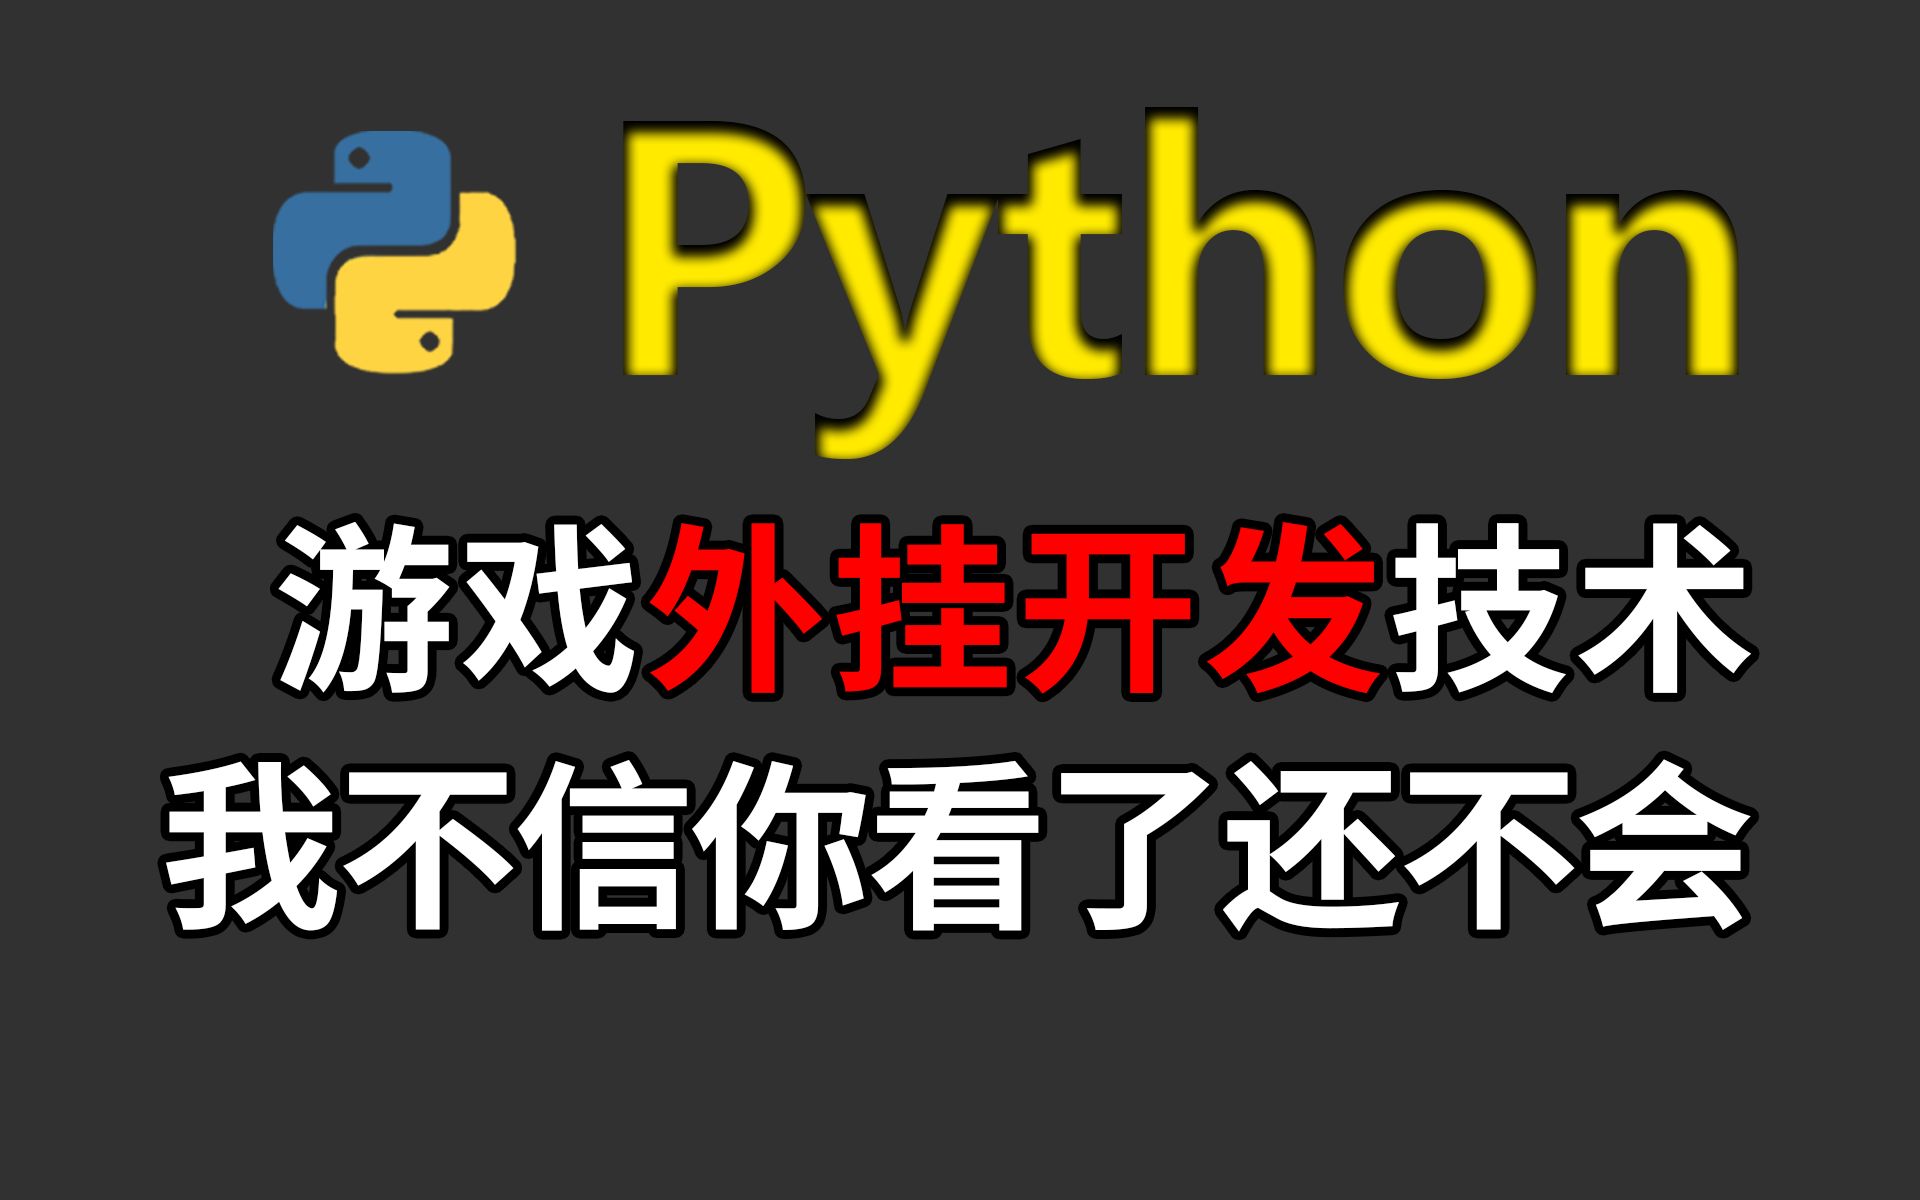 用python制作外挂脚本，原来制作脚本这么简单！0基础也能轻松掌握